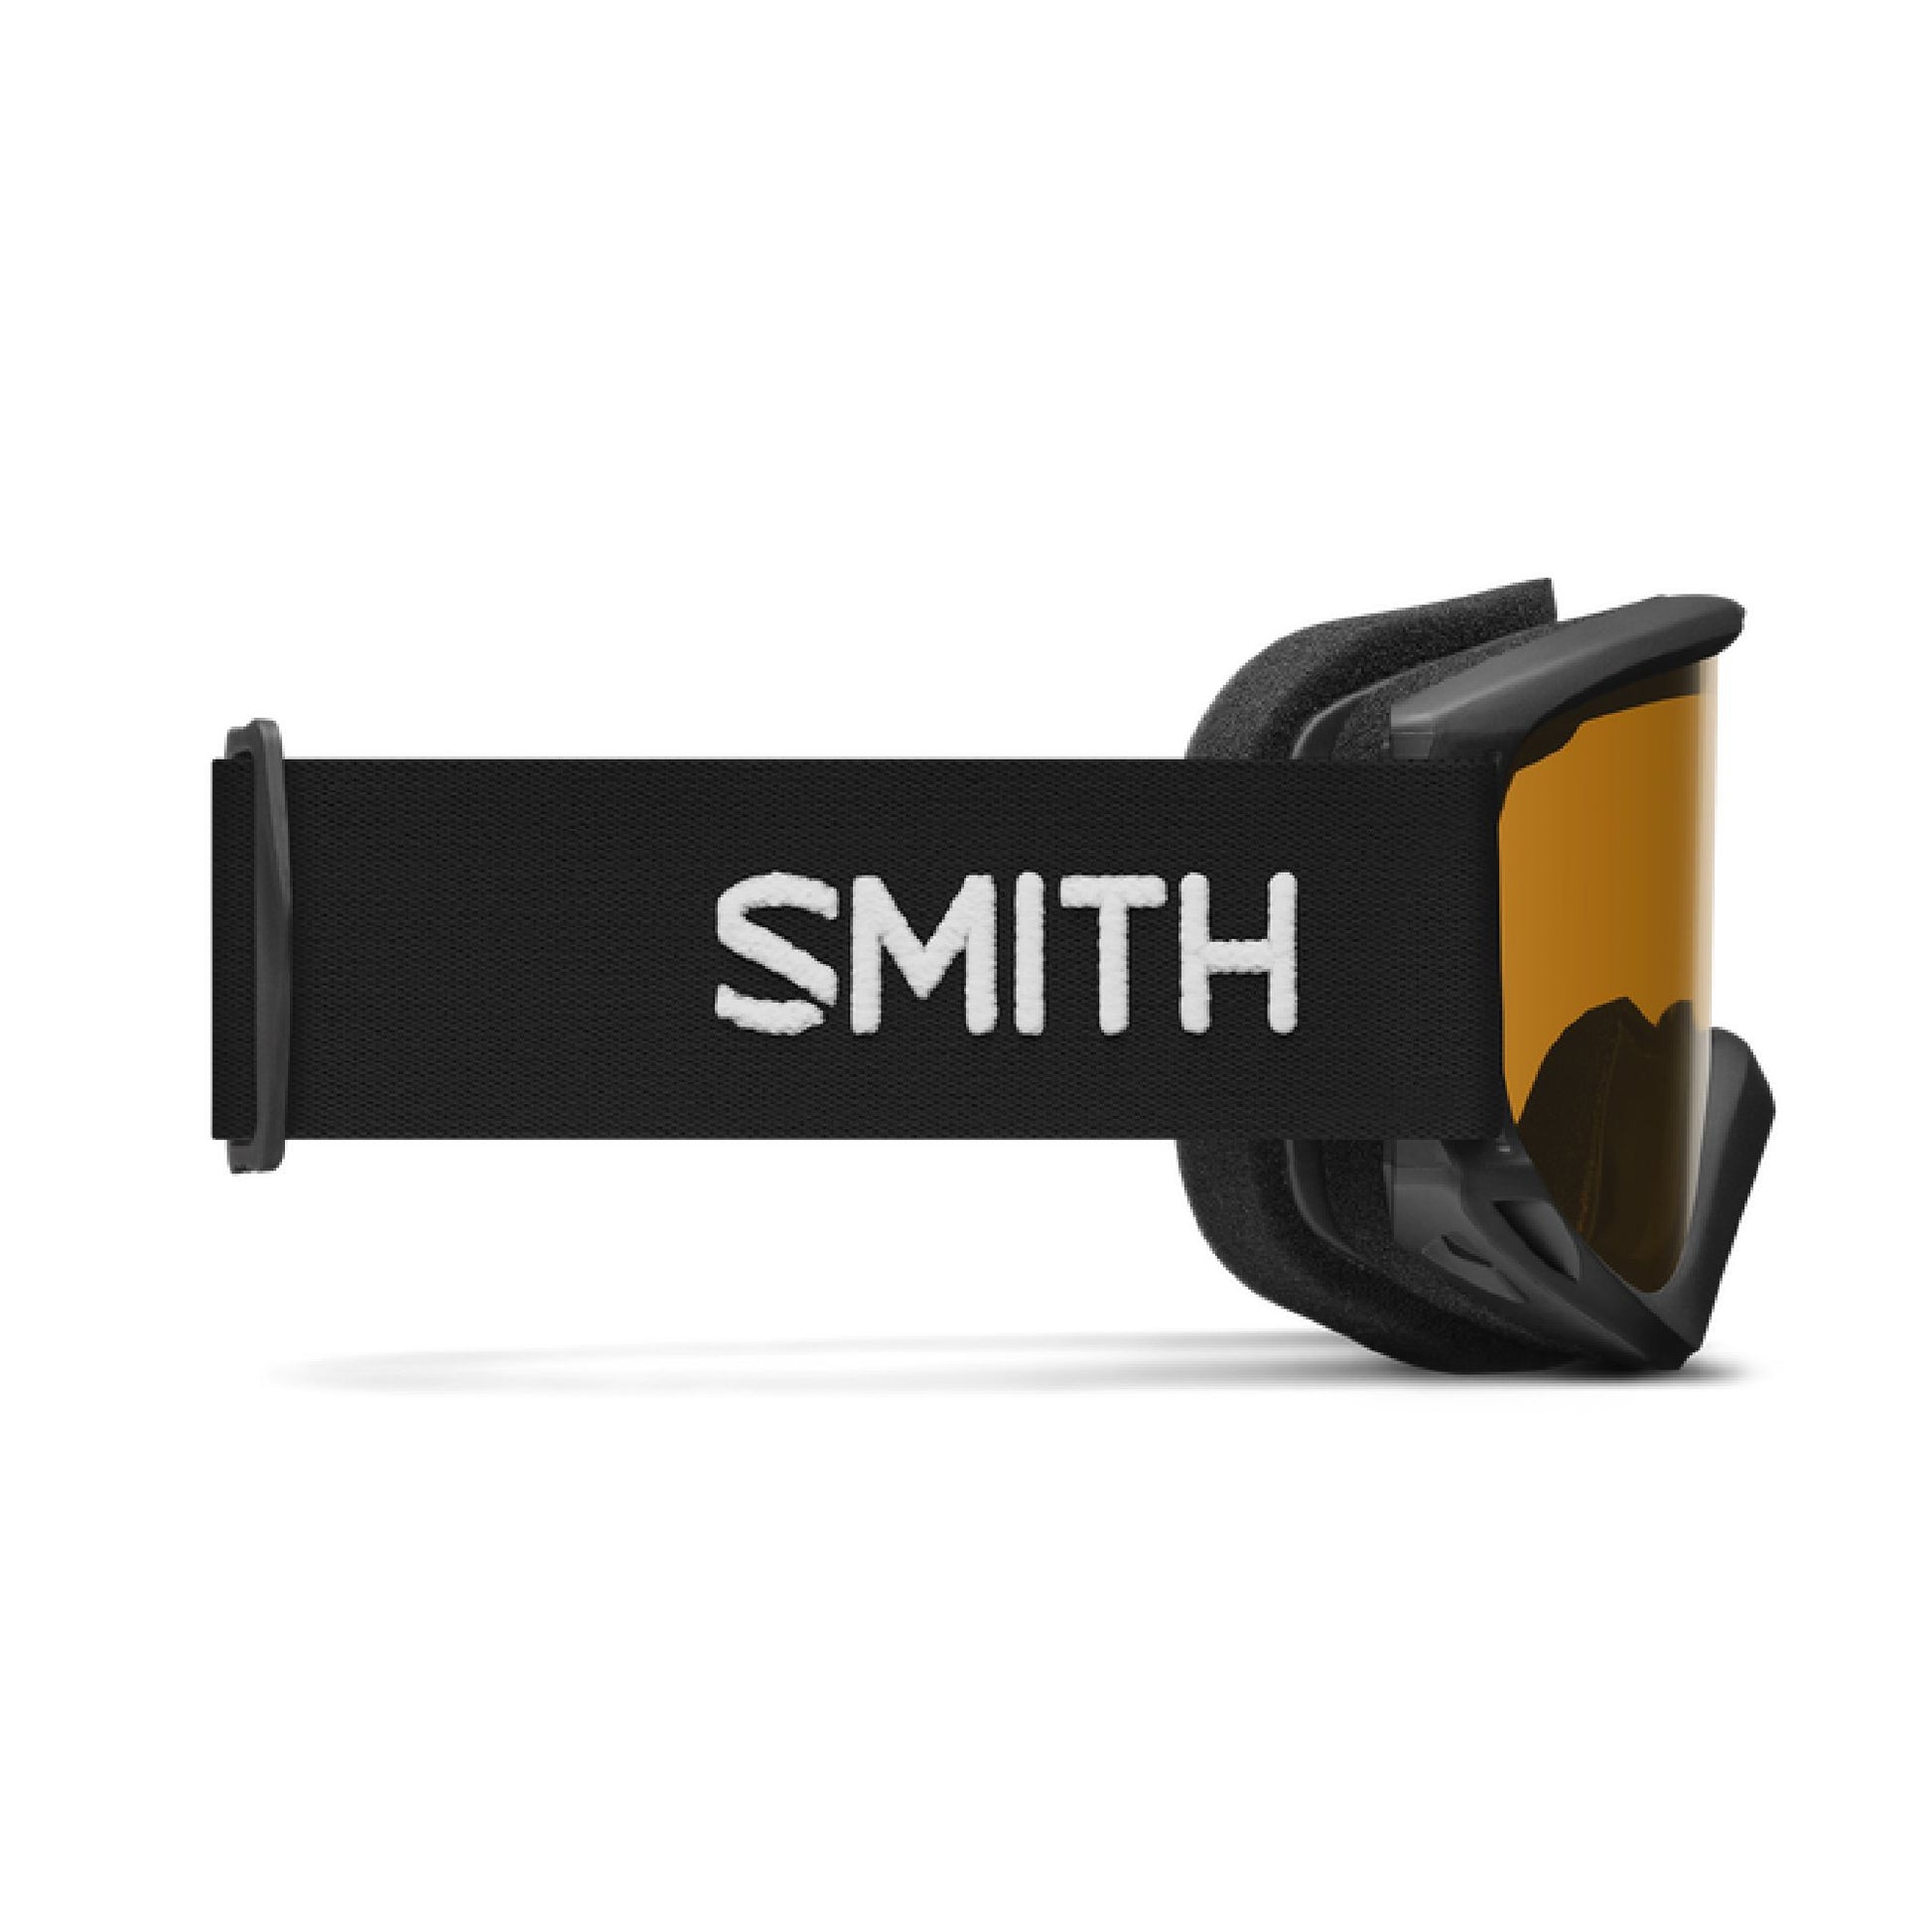 Smith Cascade Classic Snow Goggle Black Gold Lite Snow Goggles